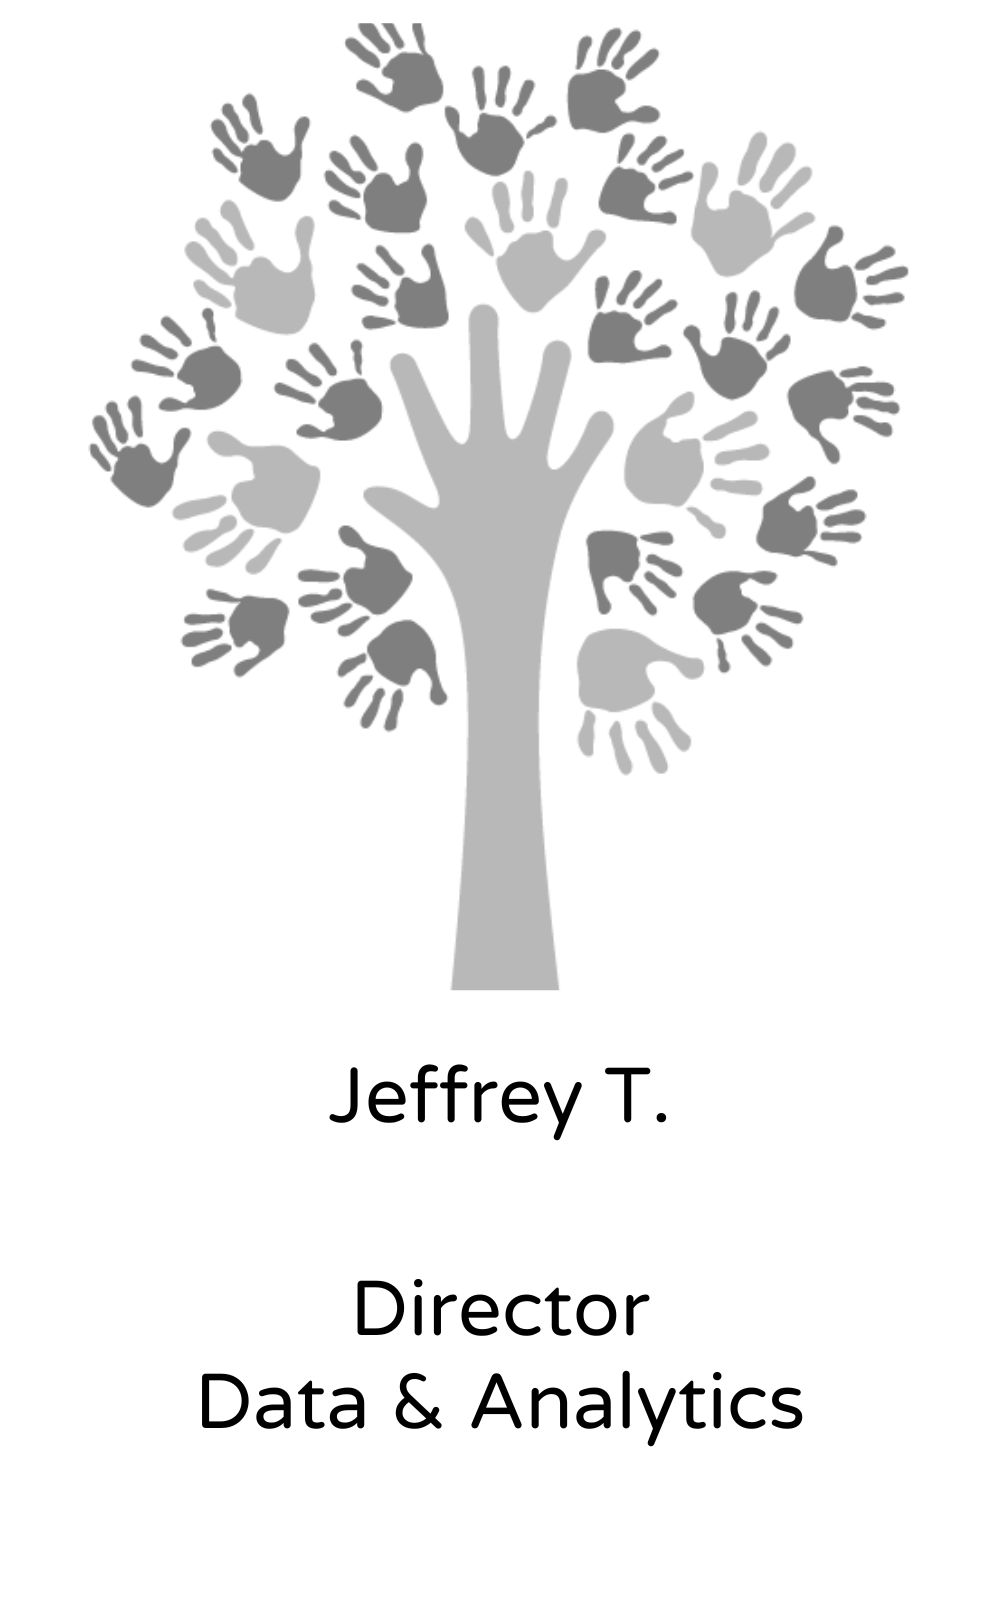 Jeffrey T, Director, Data & Analytics